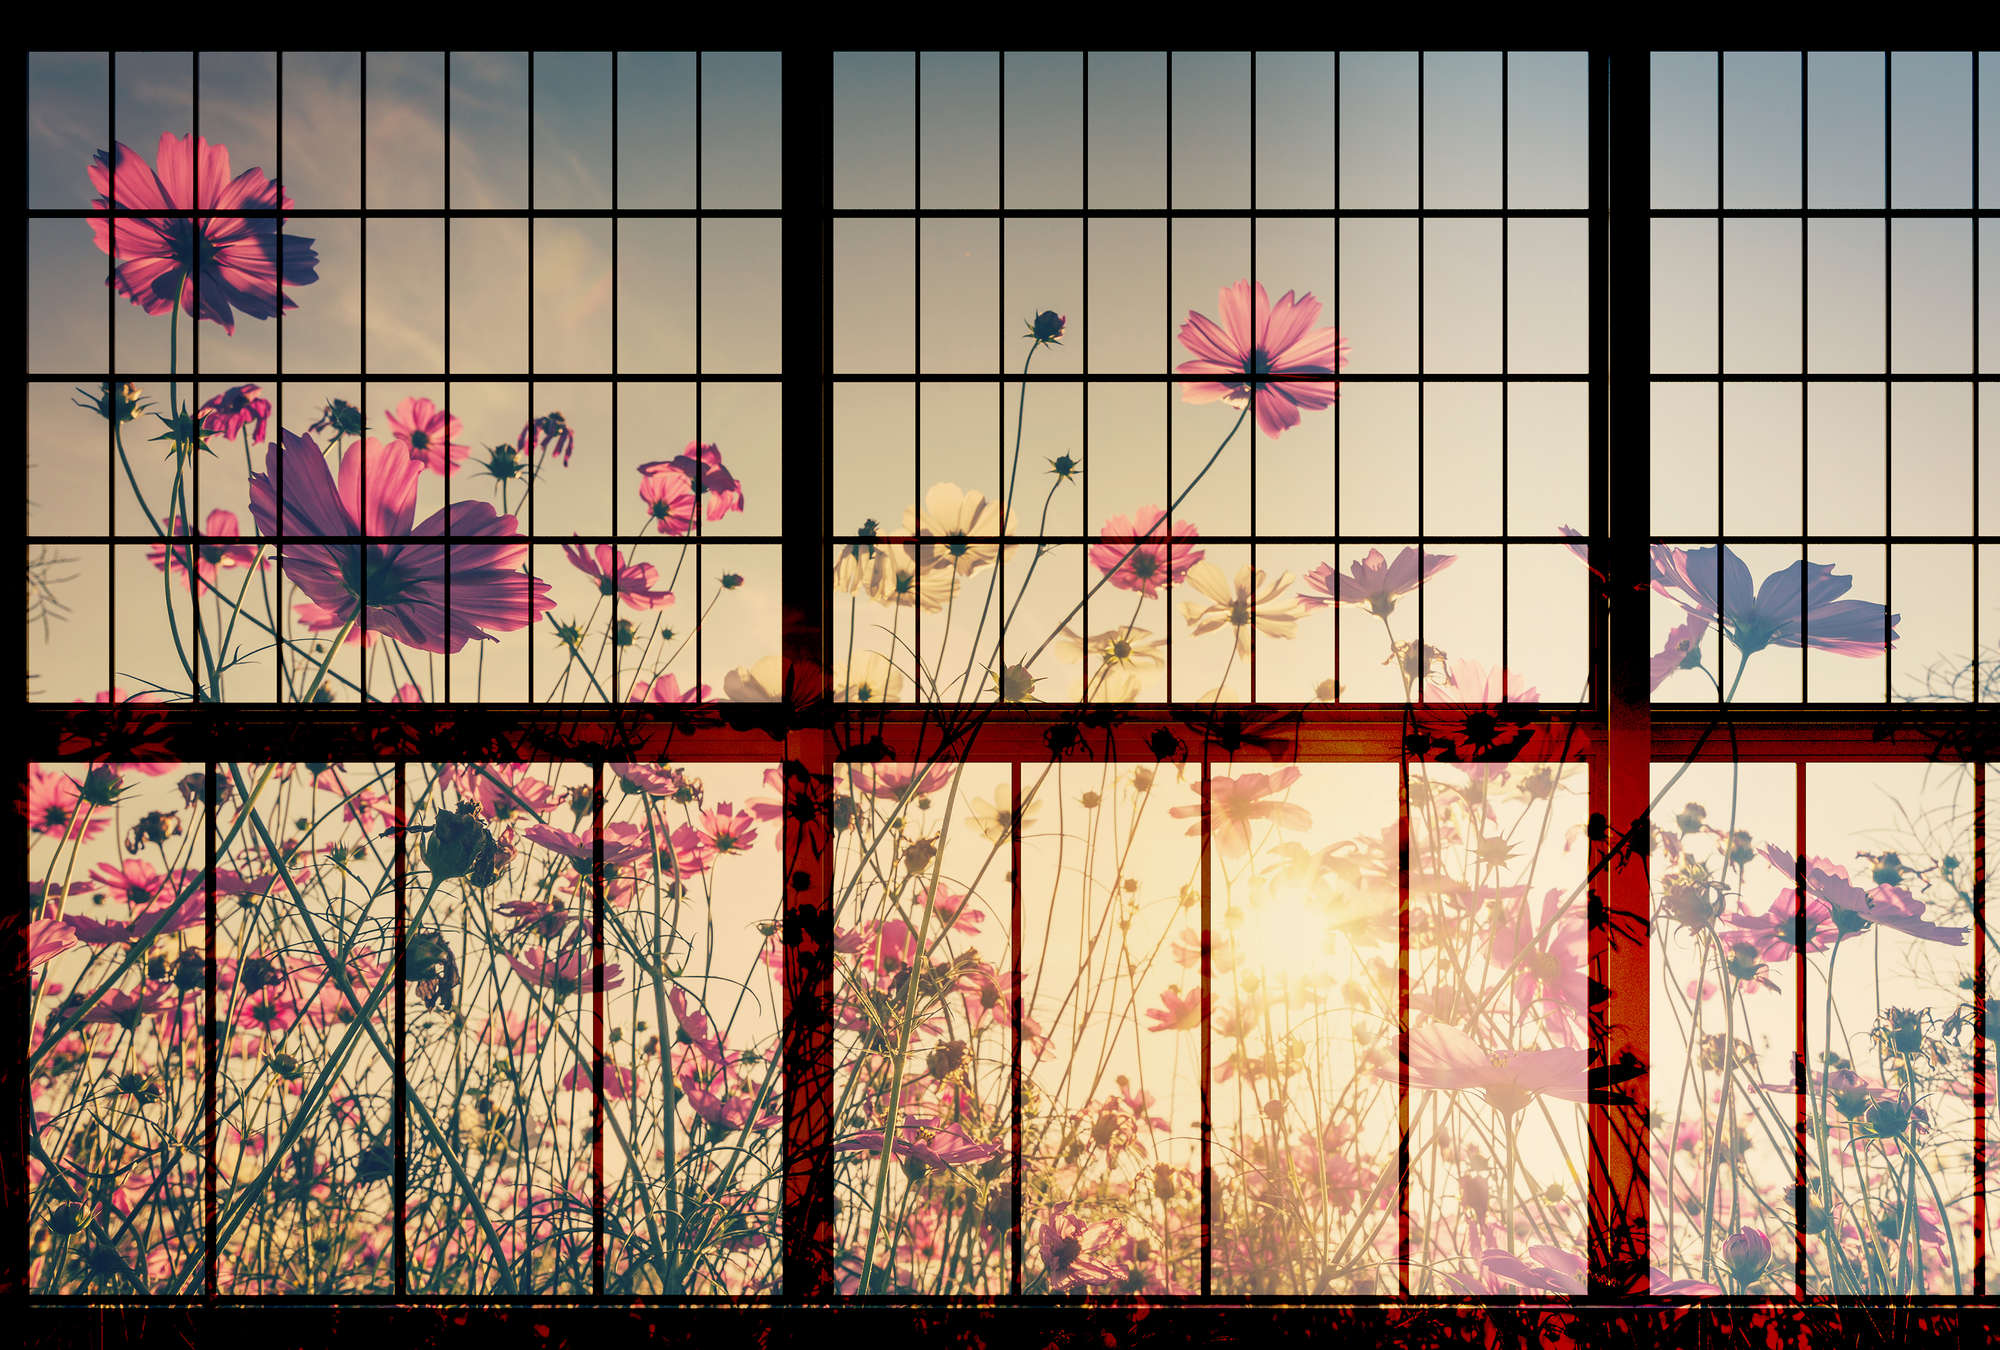             Meadow 1 - Carta da parati per finestre con fiore Meadow - Verde, Rosa | Vello liscio Premium
        